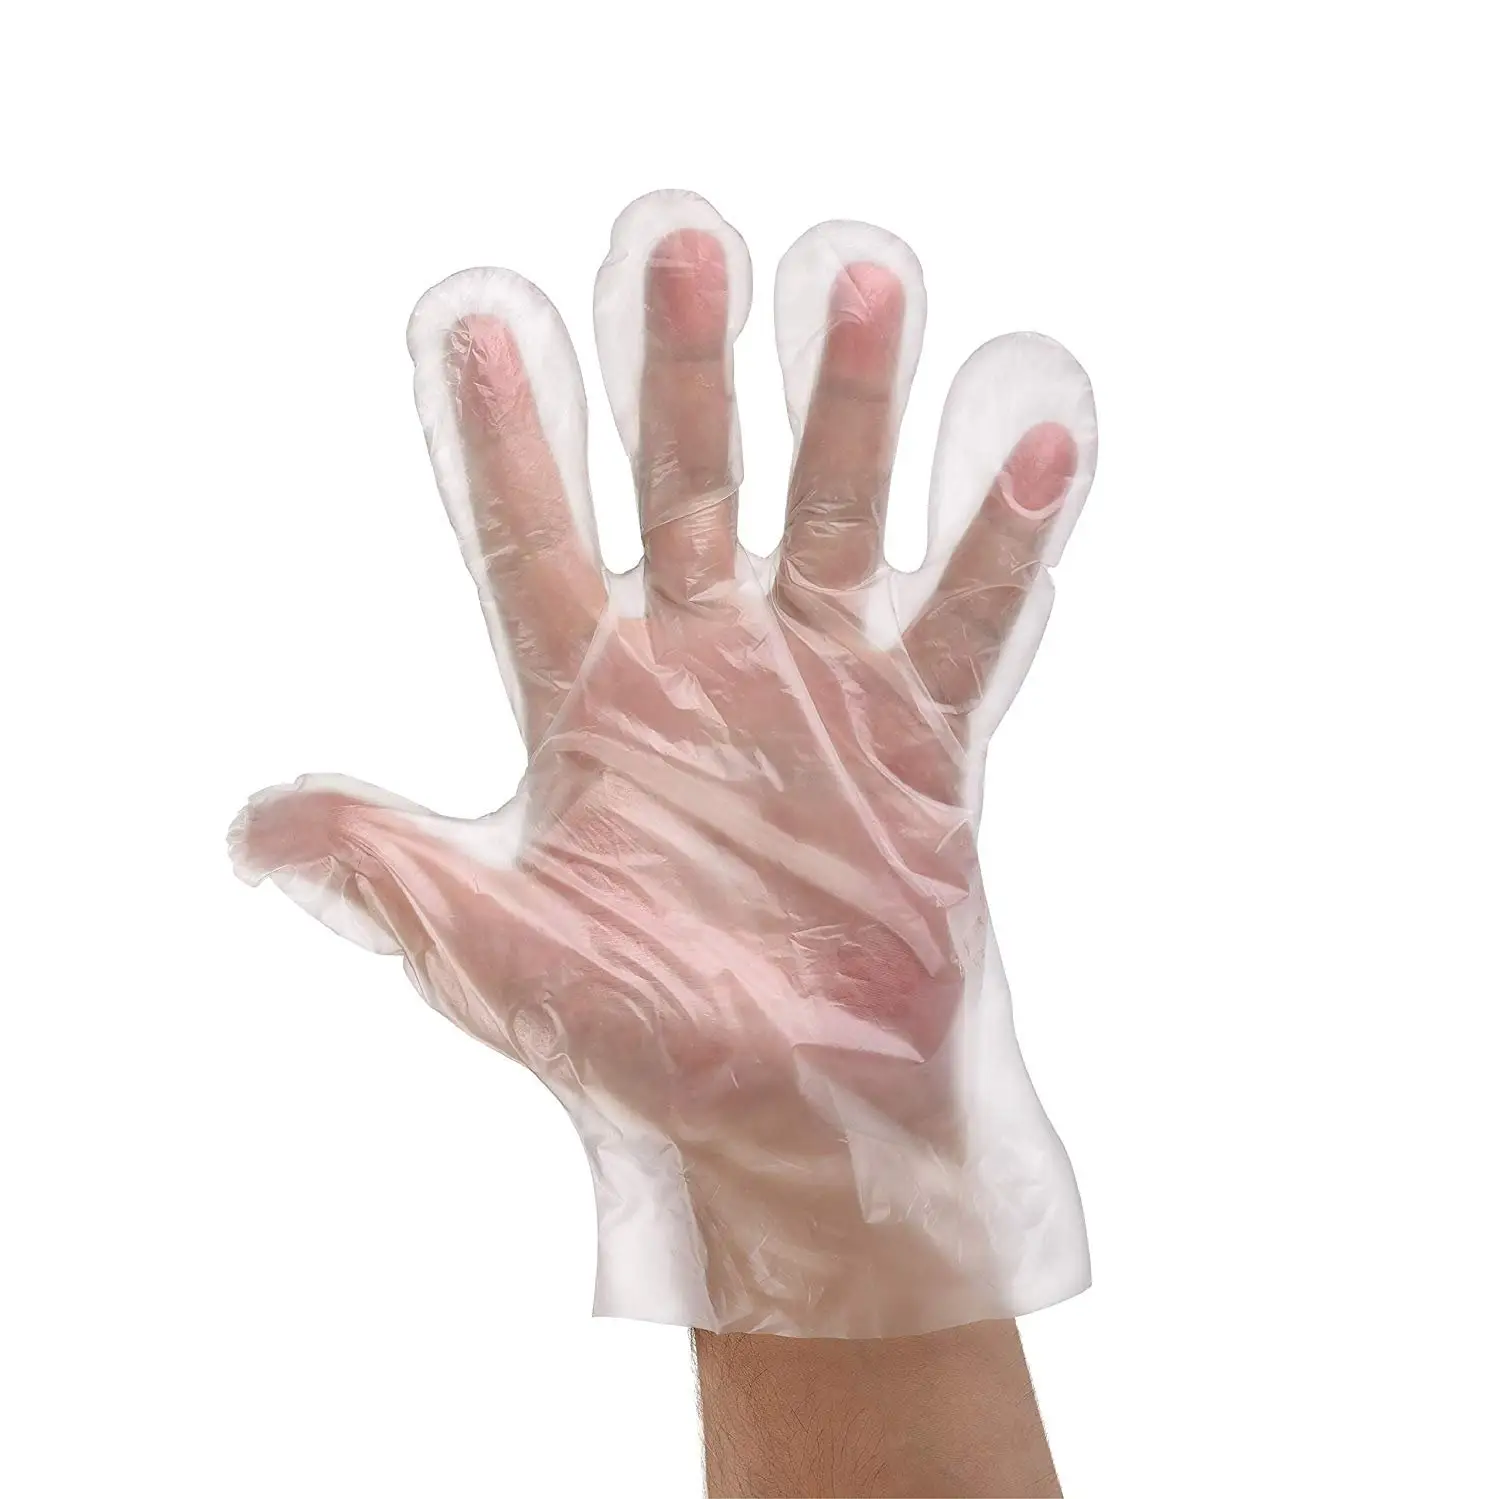 ถุงมือ hdpe cpe แบบใช้แล้วทิ้งโปร่งใสคุณภาพสูงราคาถูกถุงมือพลาสติกใสแบบใช้แล้วทิ้งหนา